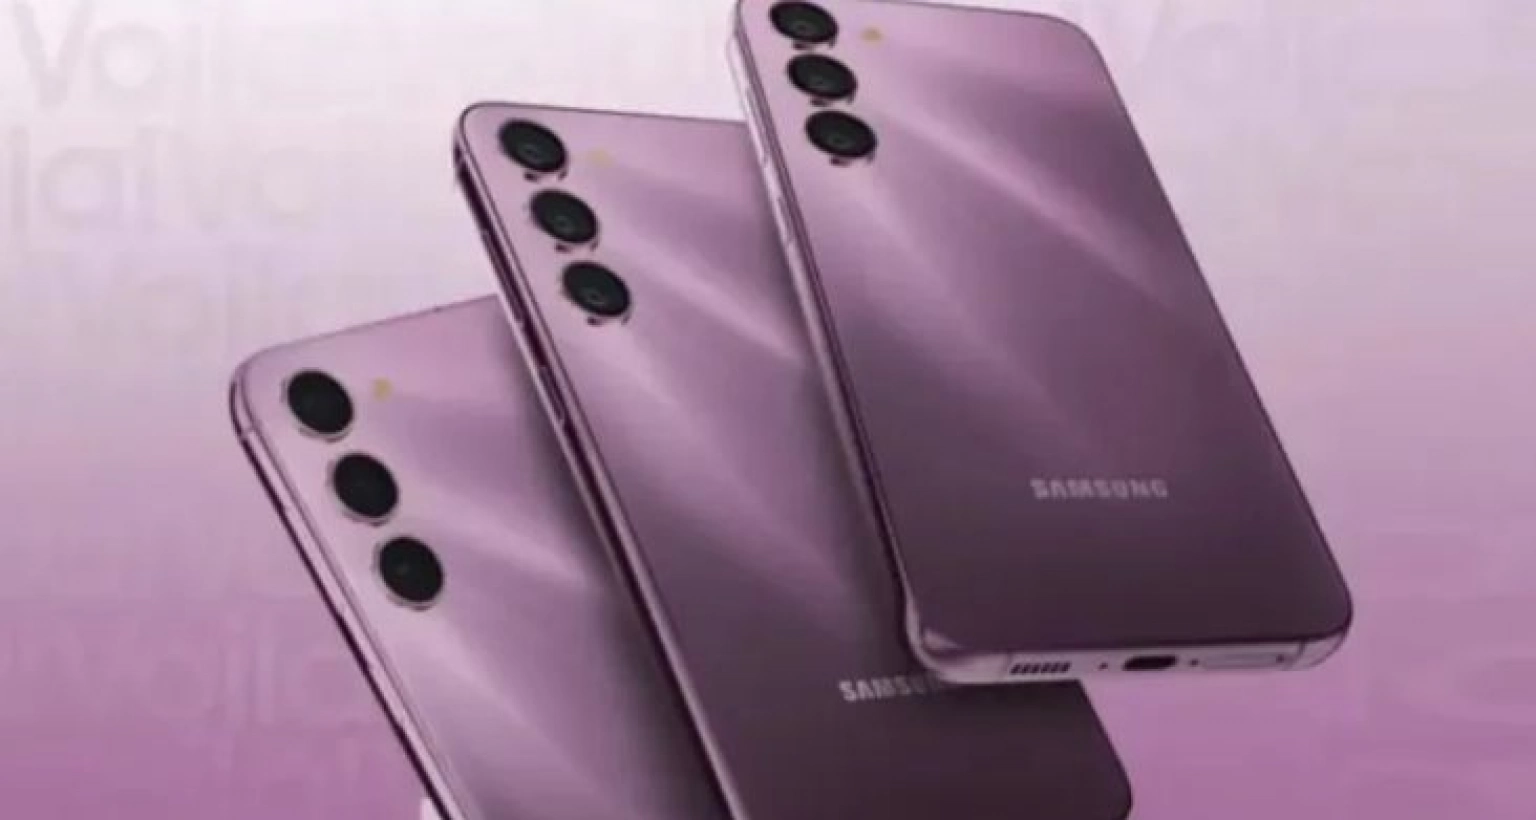 এবার সস্তায় তিন ধরণের নতুন স্মার্টফোন আনলো Samsung